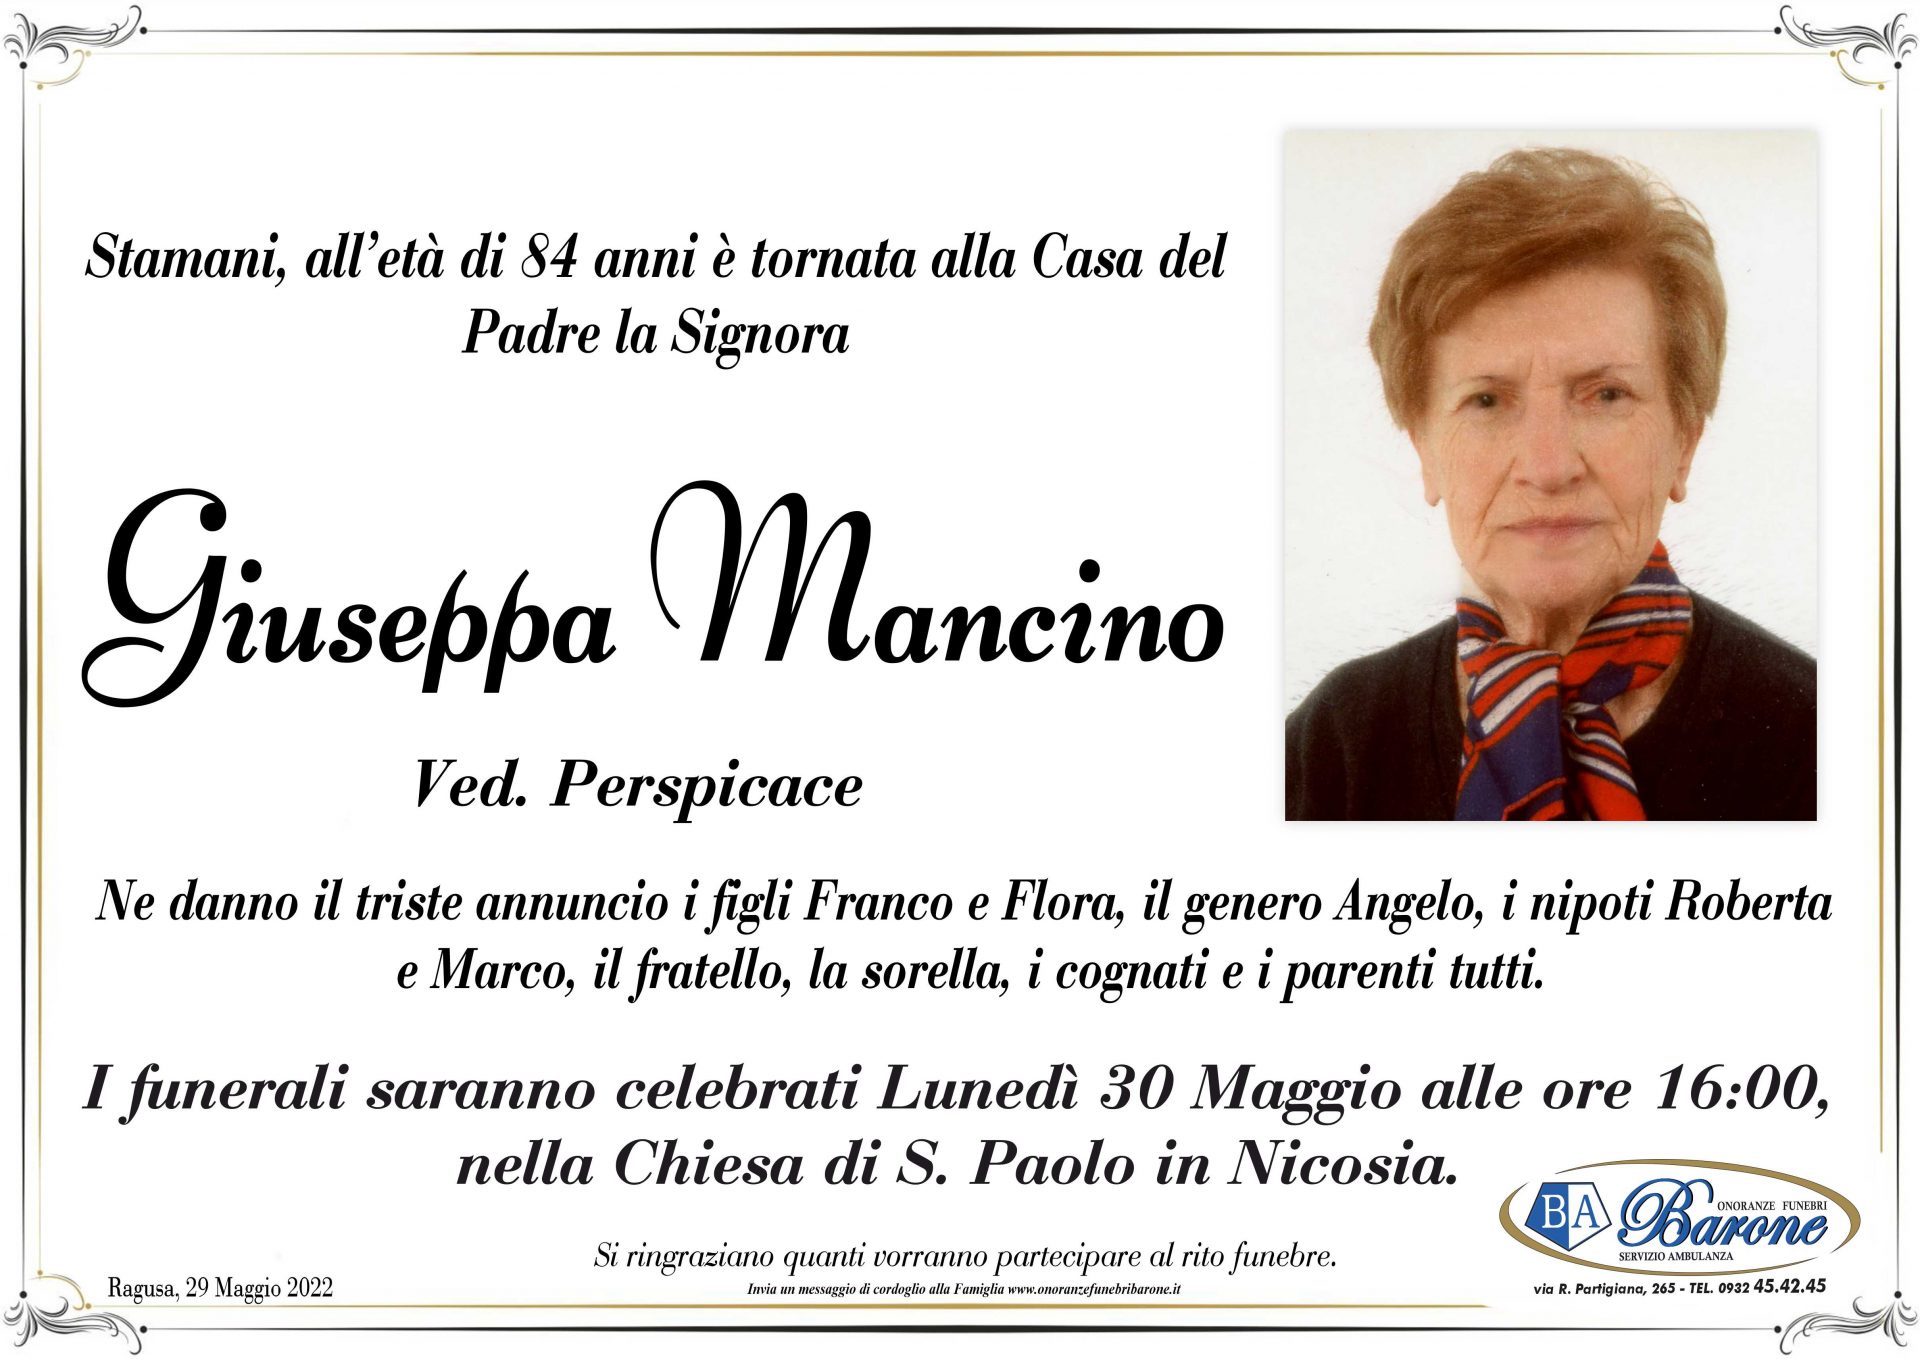 Giuseppa Mancino